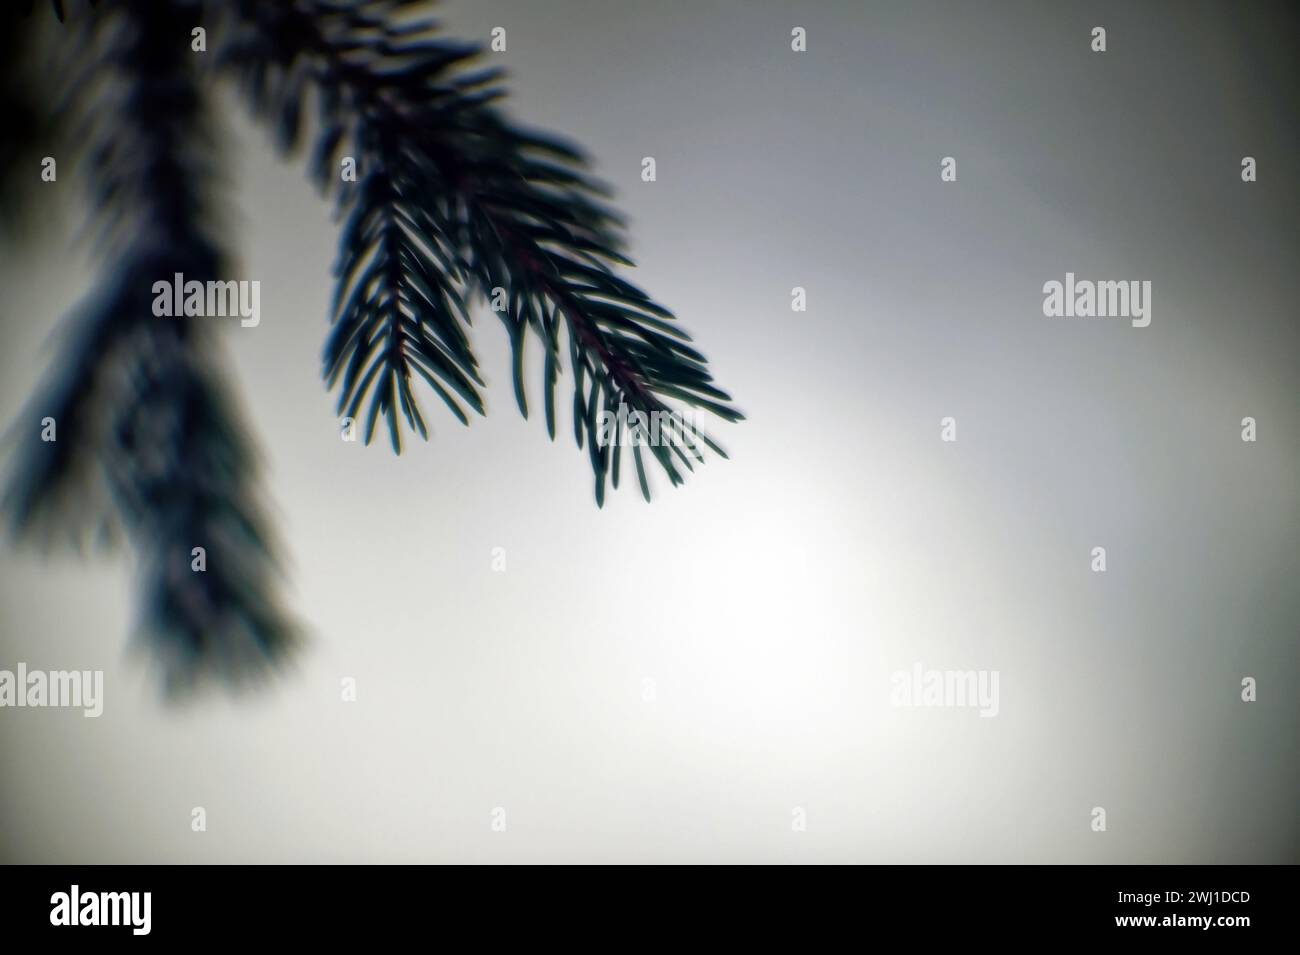 Rama de abeto en un árbol en invierno, primer plano Foto de stock